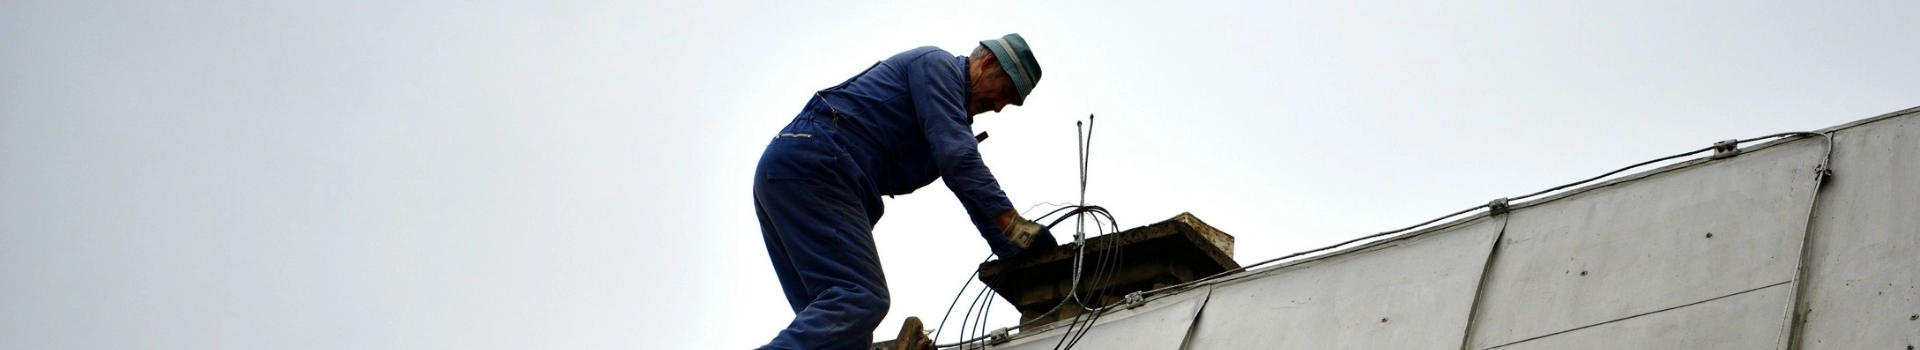 Kominiarz pracujący na dachu